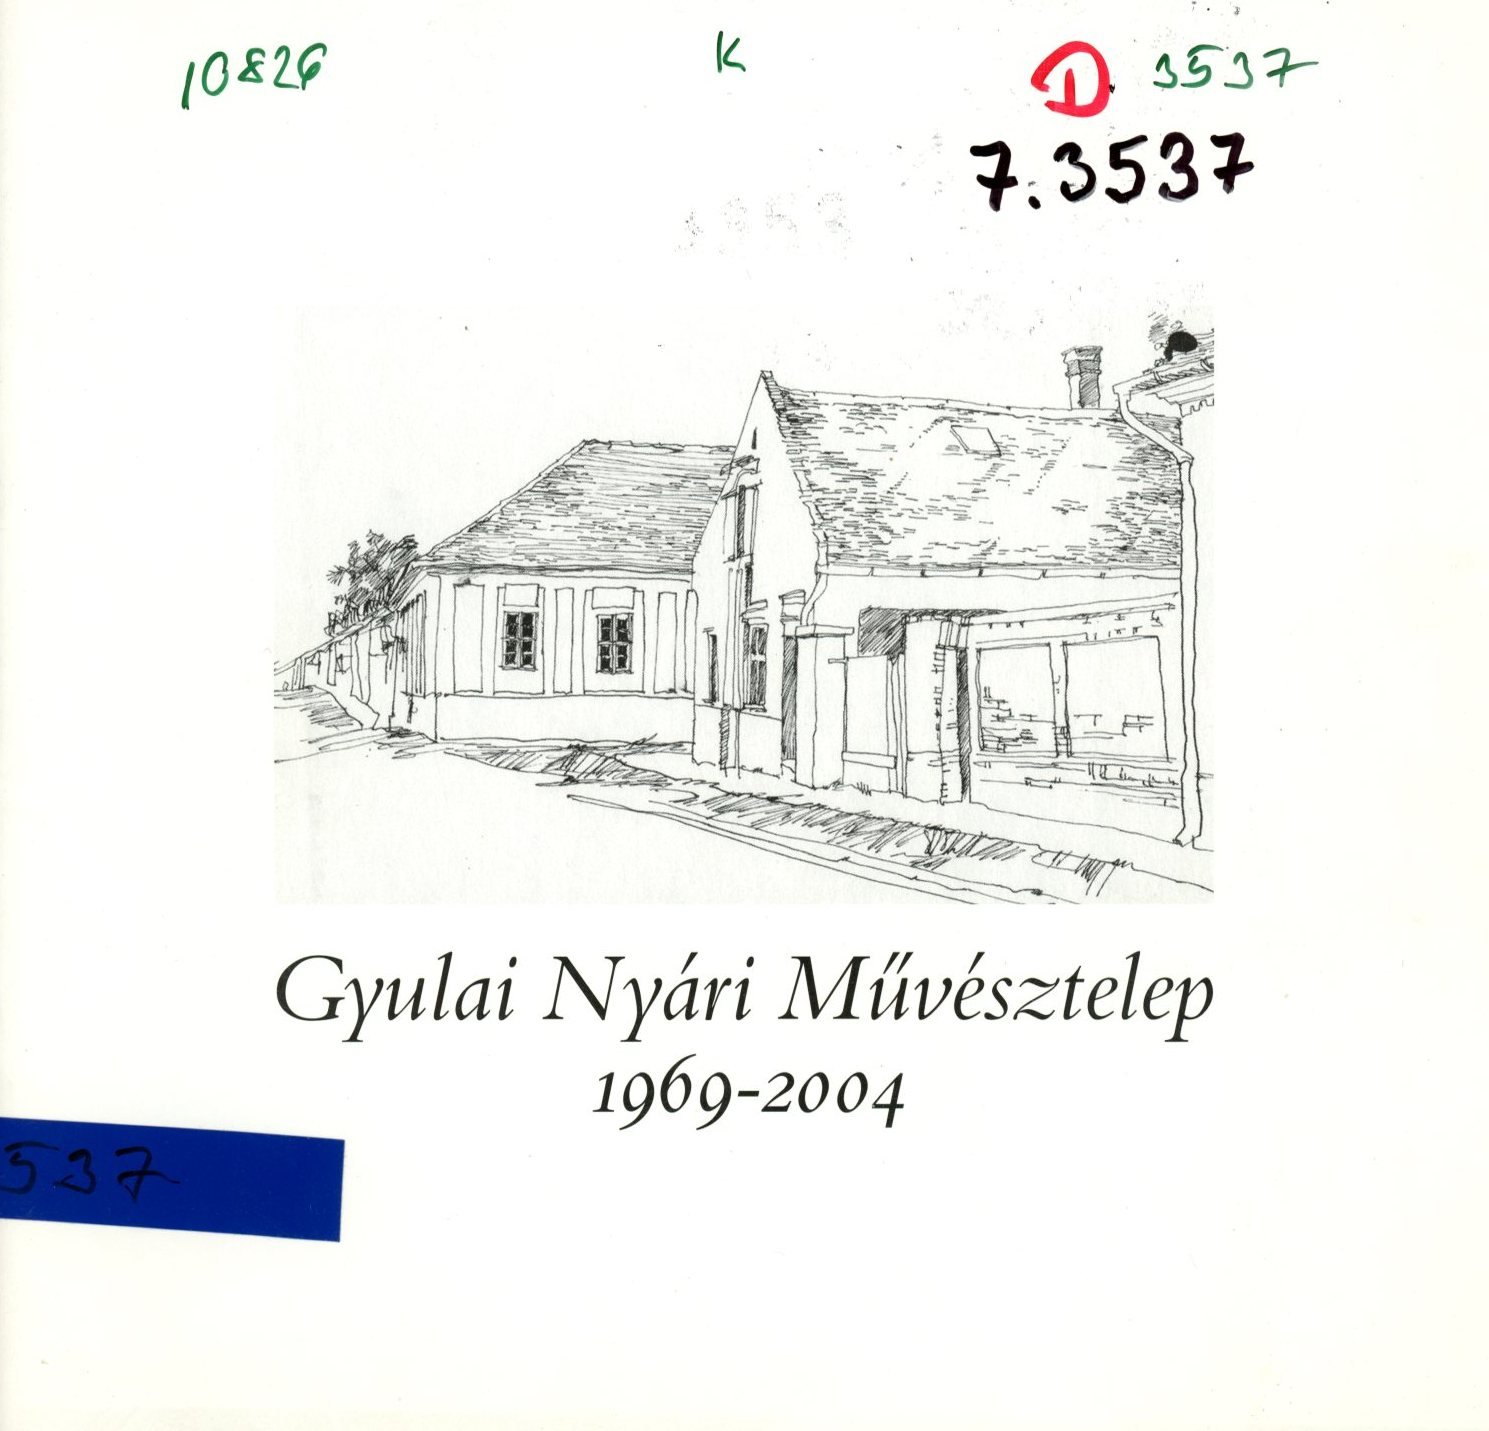 Gyulai Nyári Művésztelep 1969 - 2004 (Erkel Ferenc Múzeum és Könyvtár, Gyula CC BY-NC-SA)